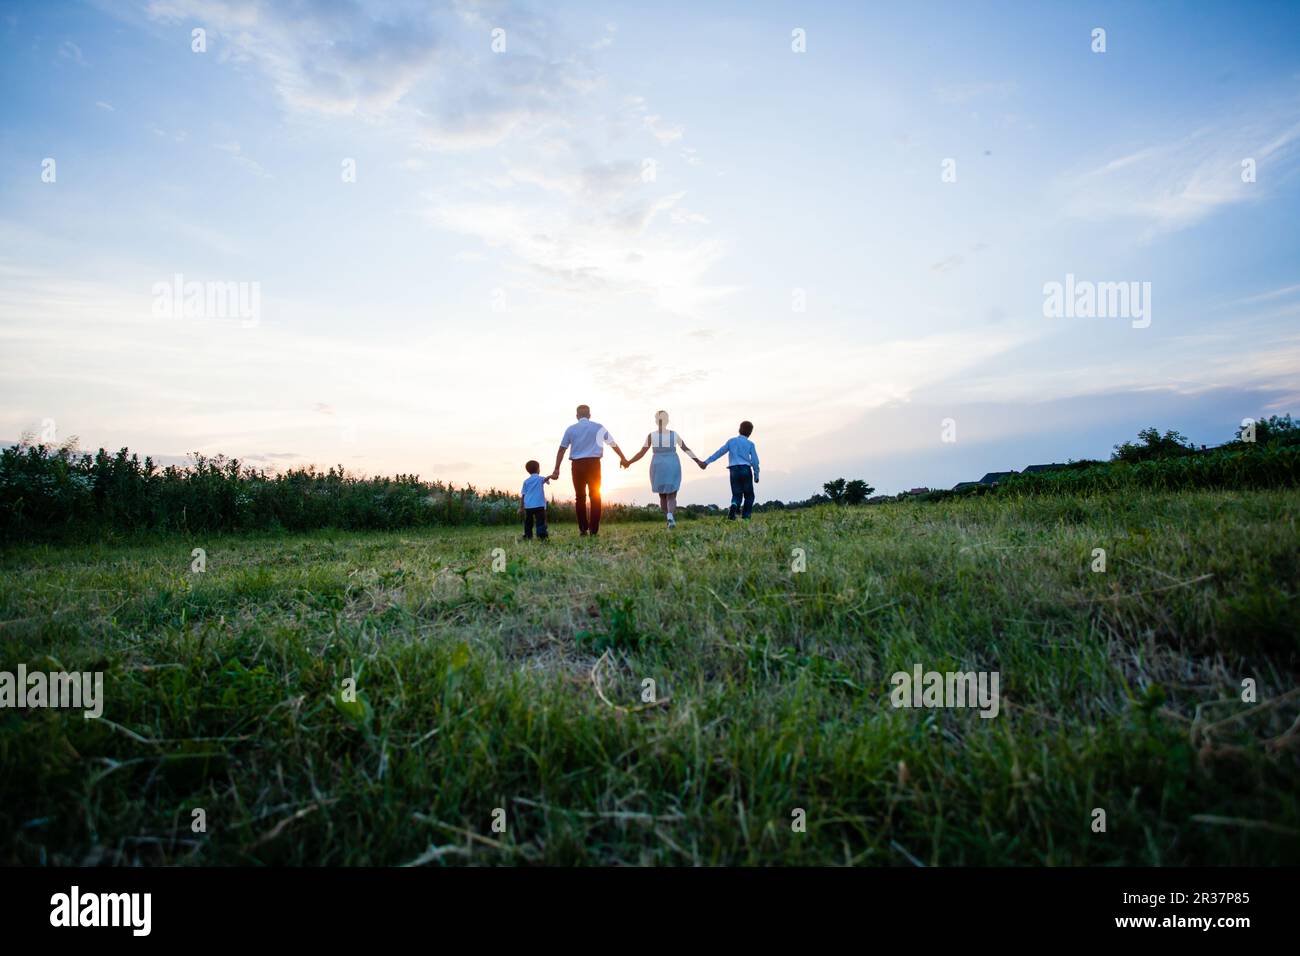 Famille heureuse sur l'arrière-plan de la coucher du soleil Banque D'Images